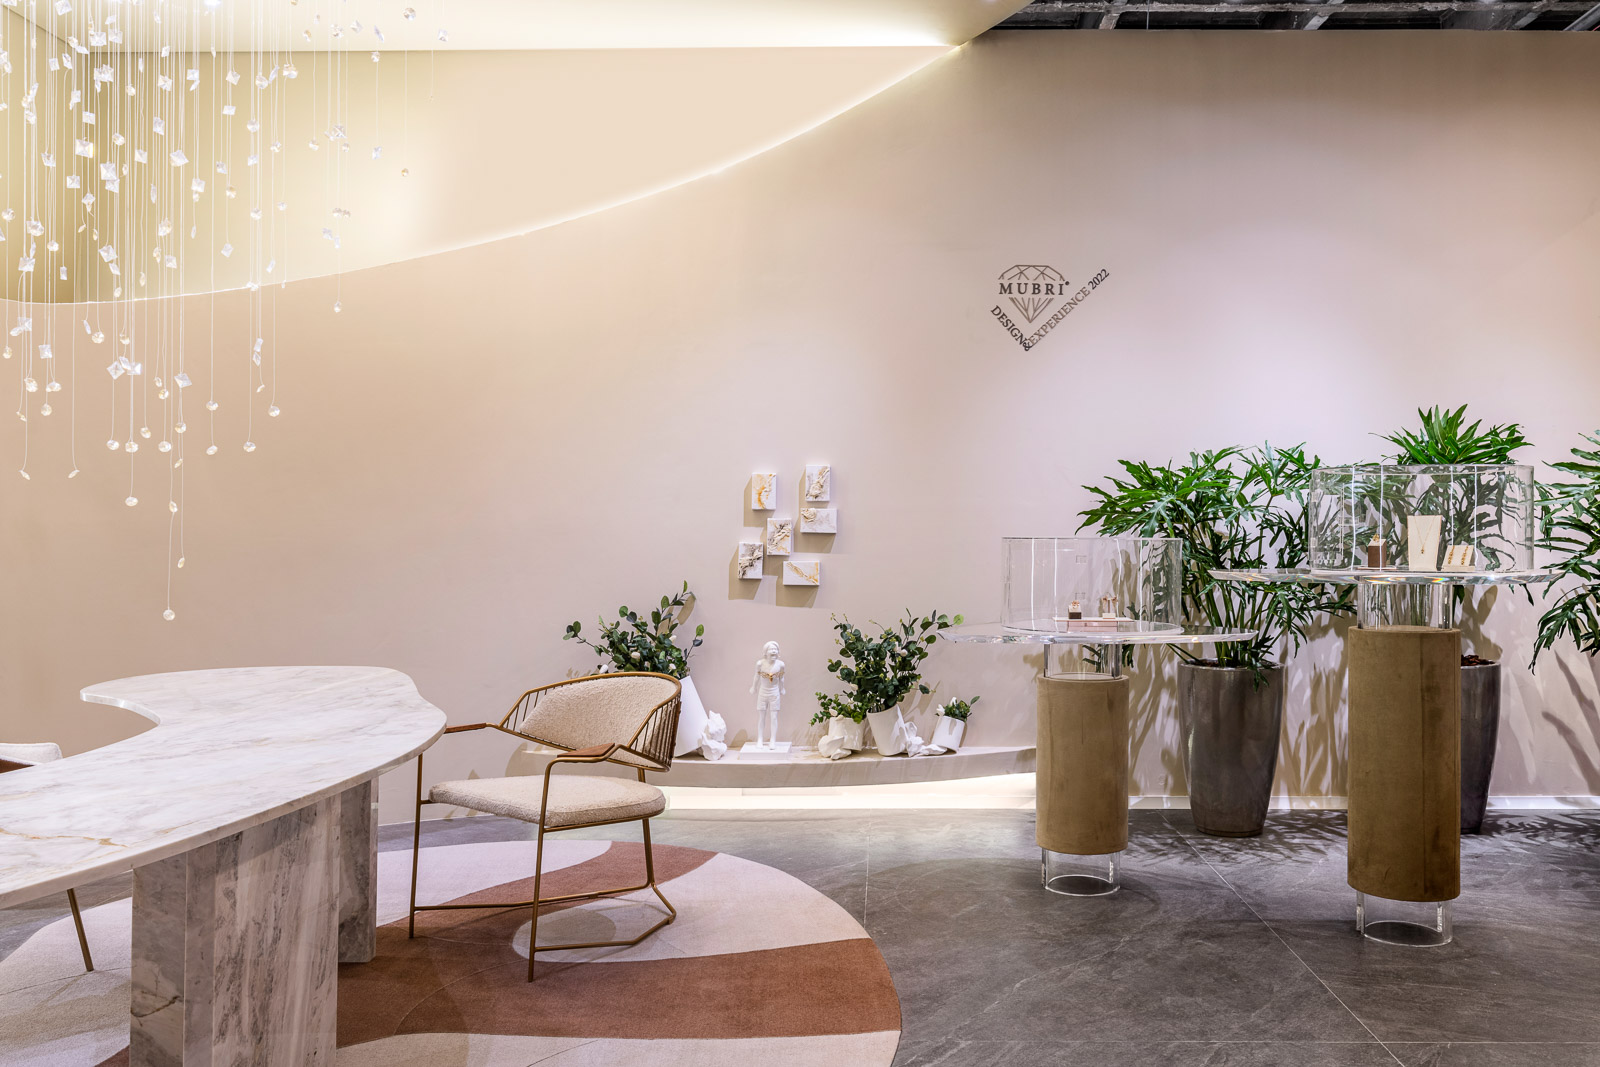 gabriela mendes casa das joias casacor sp 2022 decoracao mostras design sala mesa loja